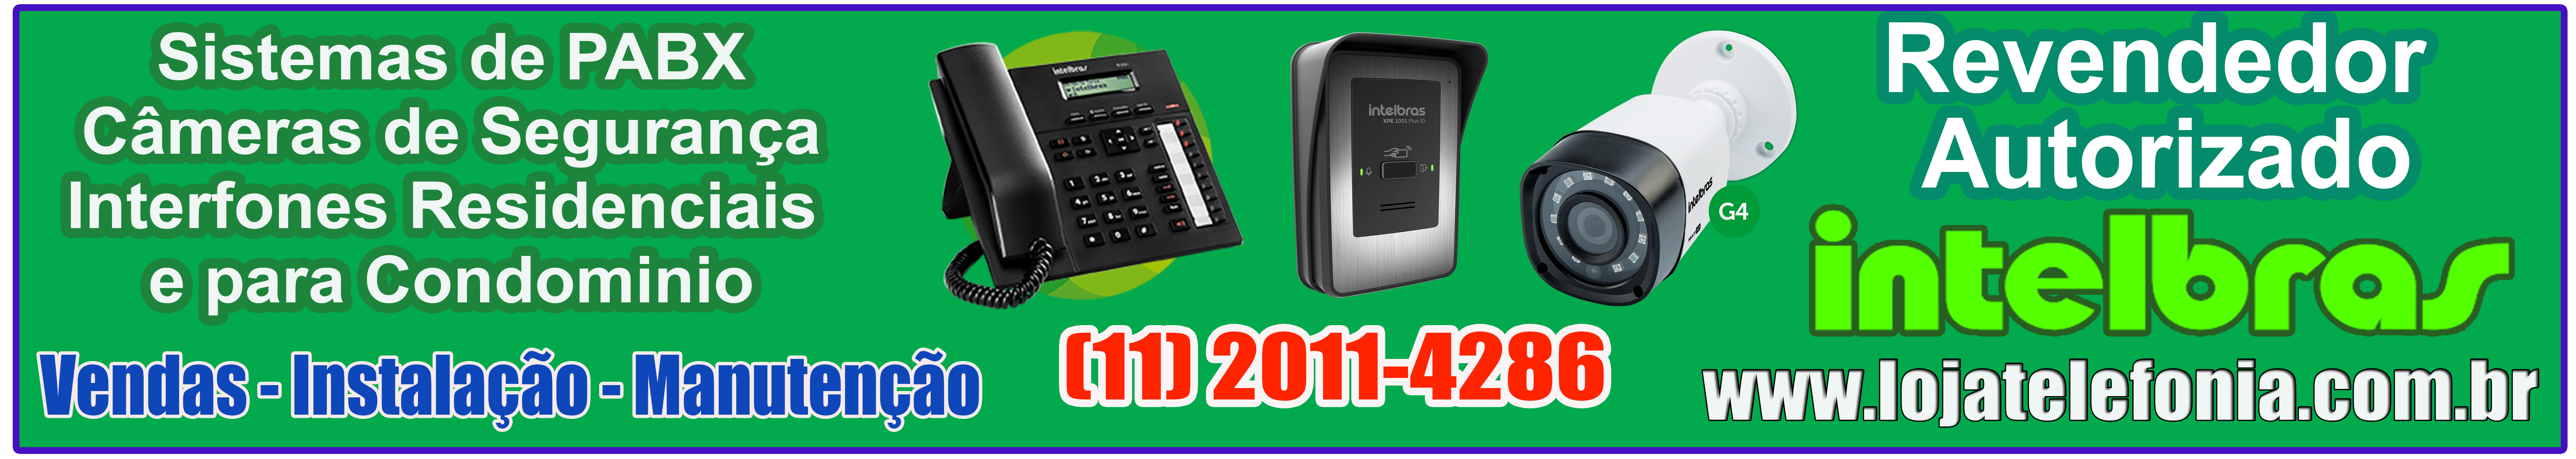 Instalação de Pabx Digital - Redução de custos ligação Cecular - Fixo - Consulte maiores informações - Ligue: (11)2011 4286